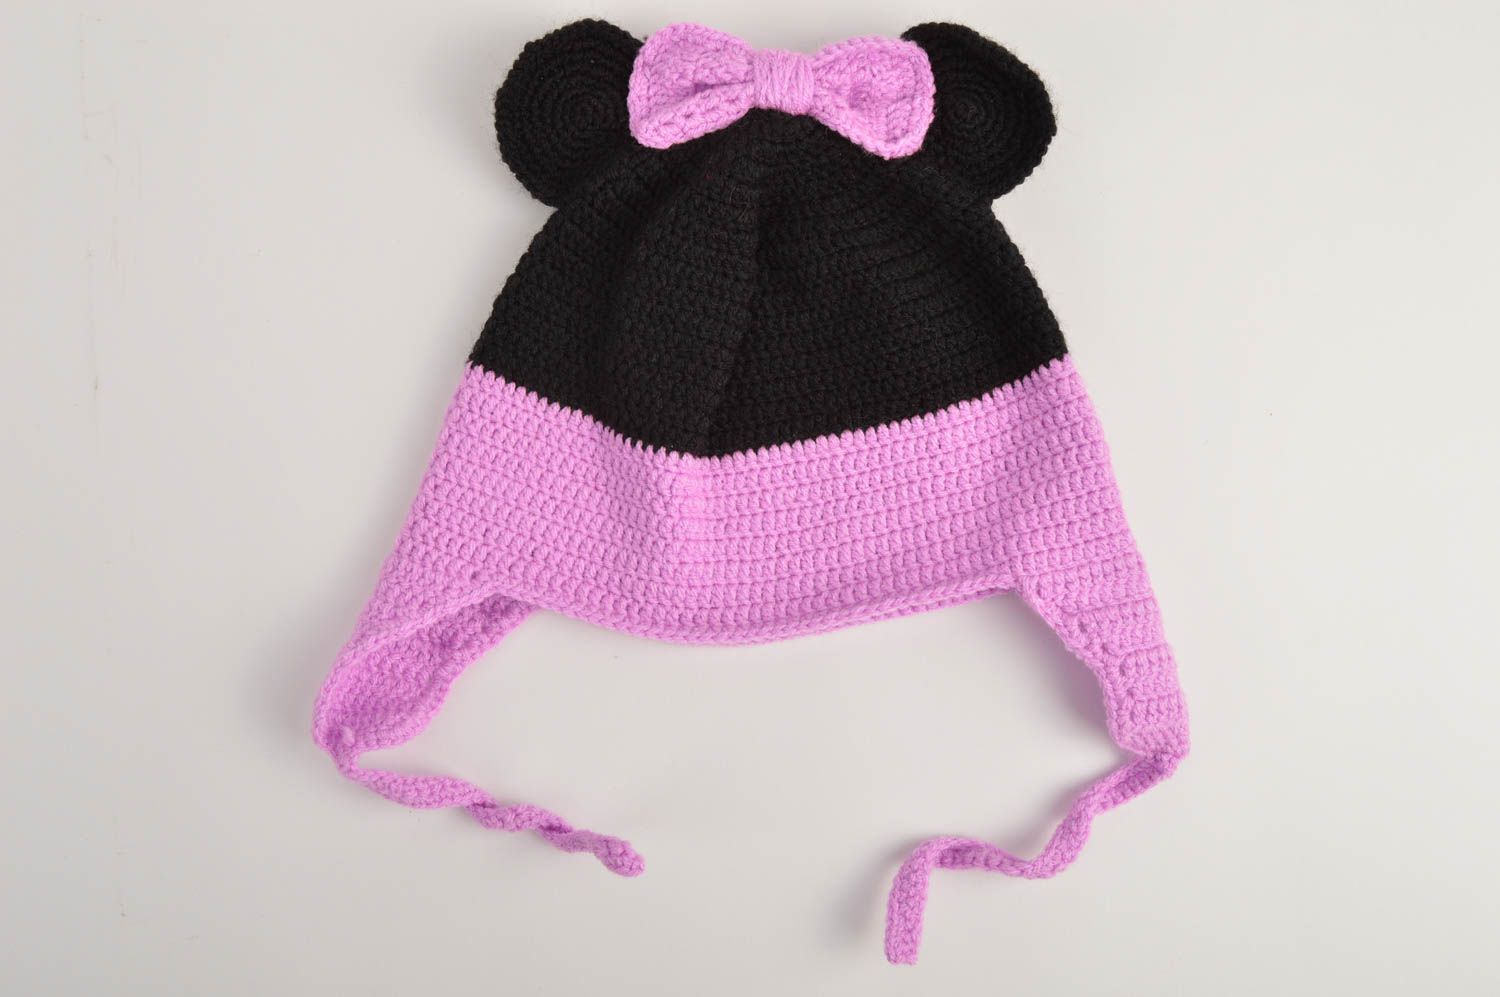 Handmade warm baby hat crochet hat designs winter head accessories ideas photo 3